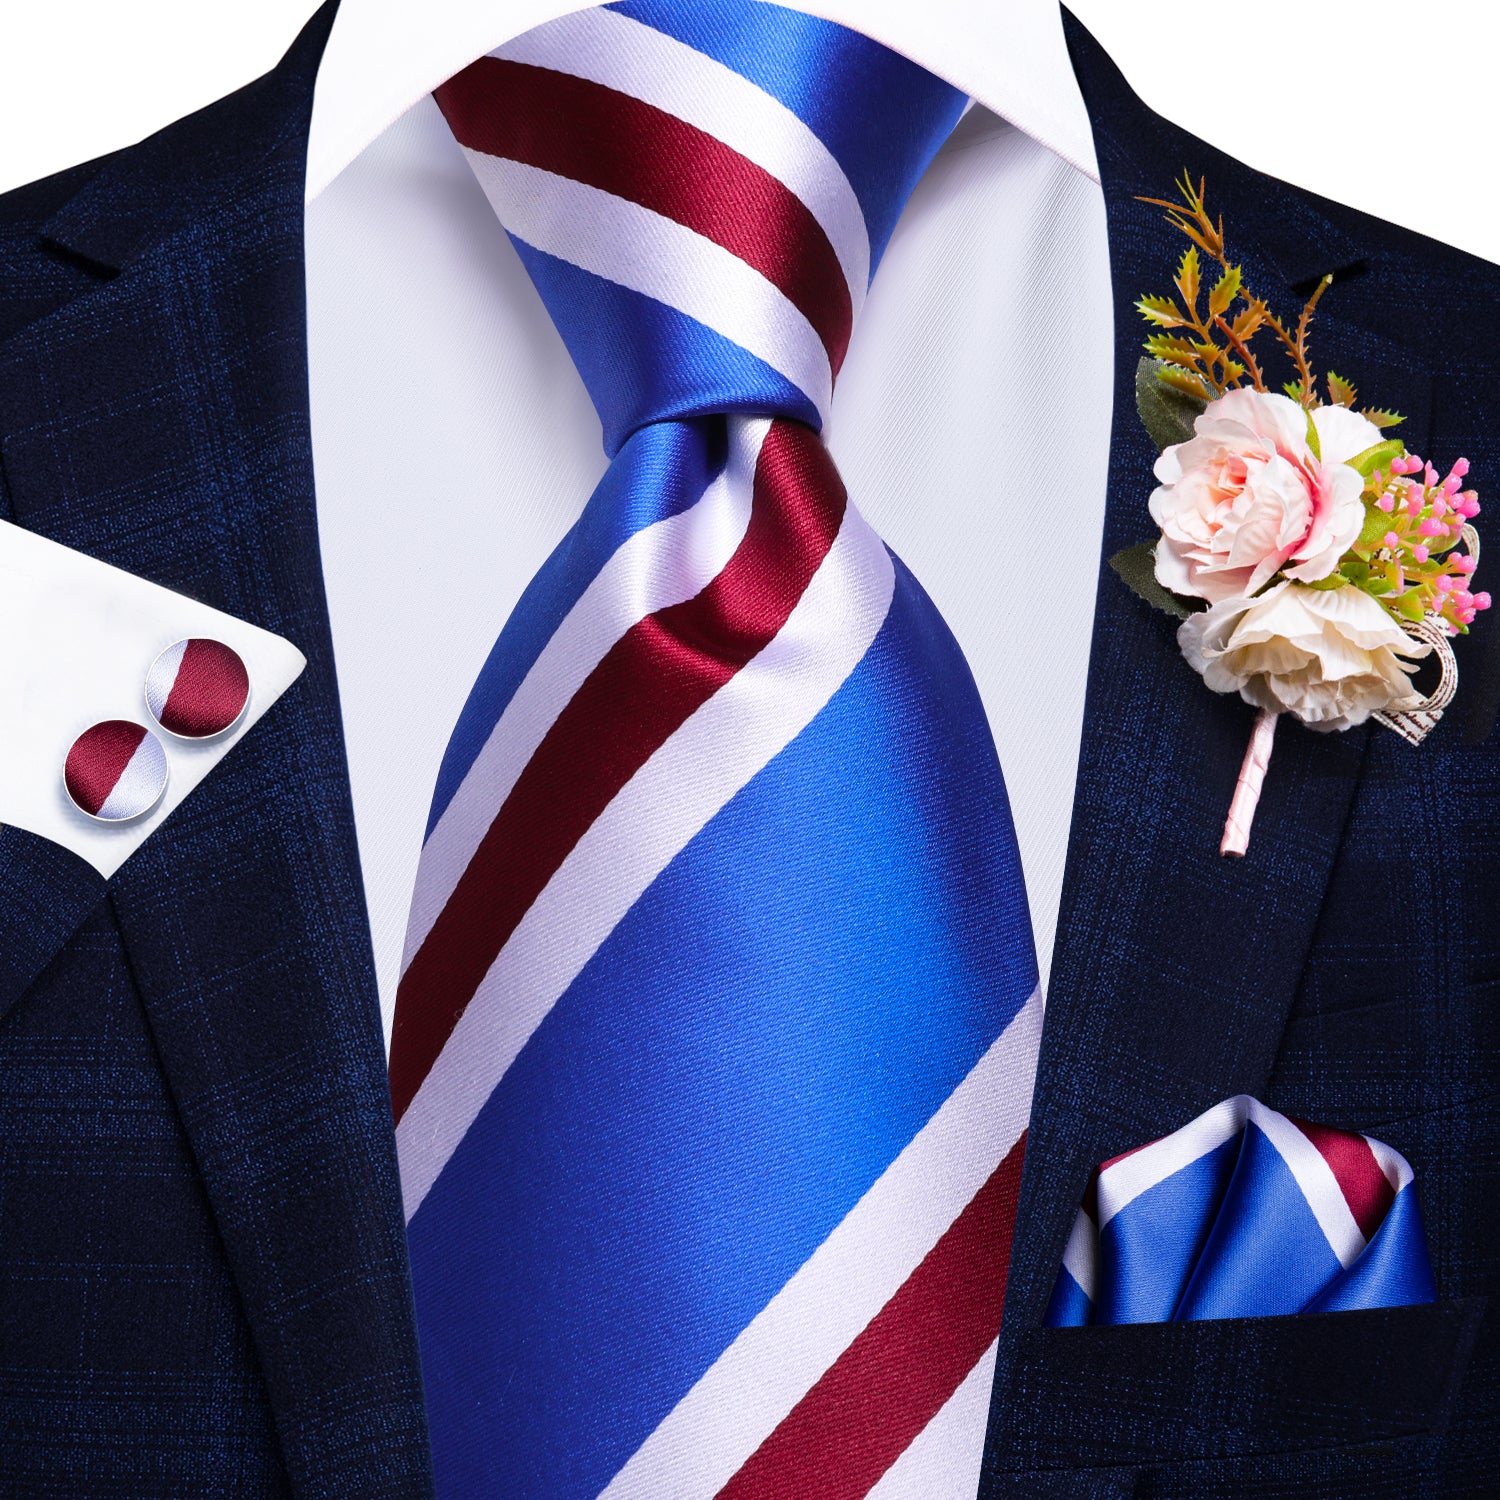 Blue Red White Tie Handkerchief Cufflinks Set with Wedding Brooch